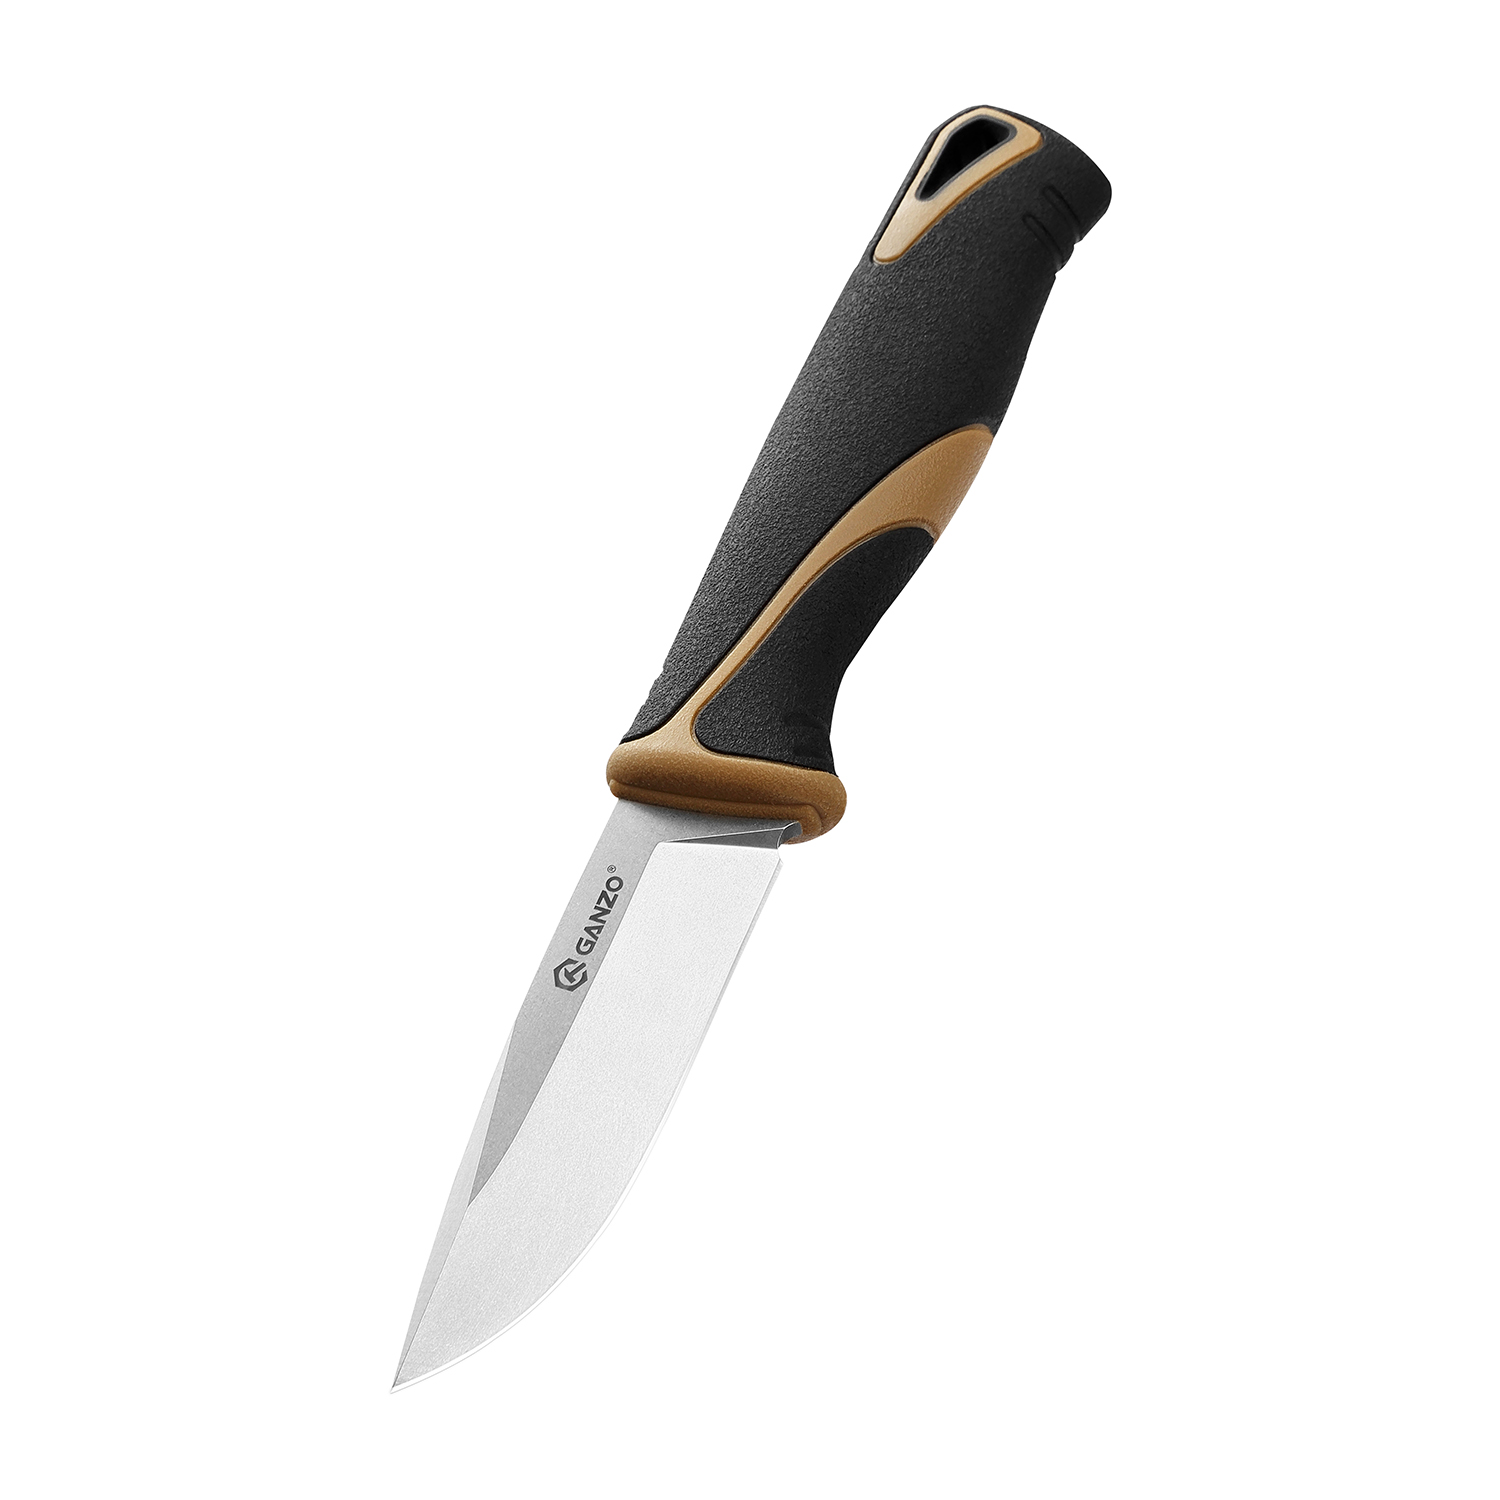 Нож Ganzo Fixed/Case, сталь 9Cr14Mov, рукоять прорезиненный пластик, черно-коричневый